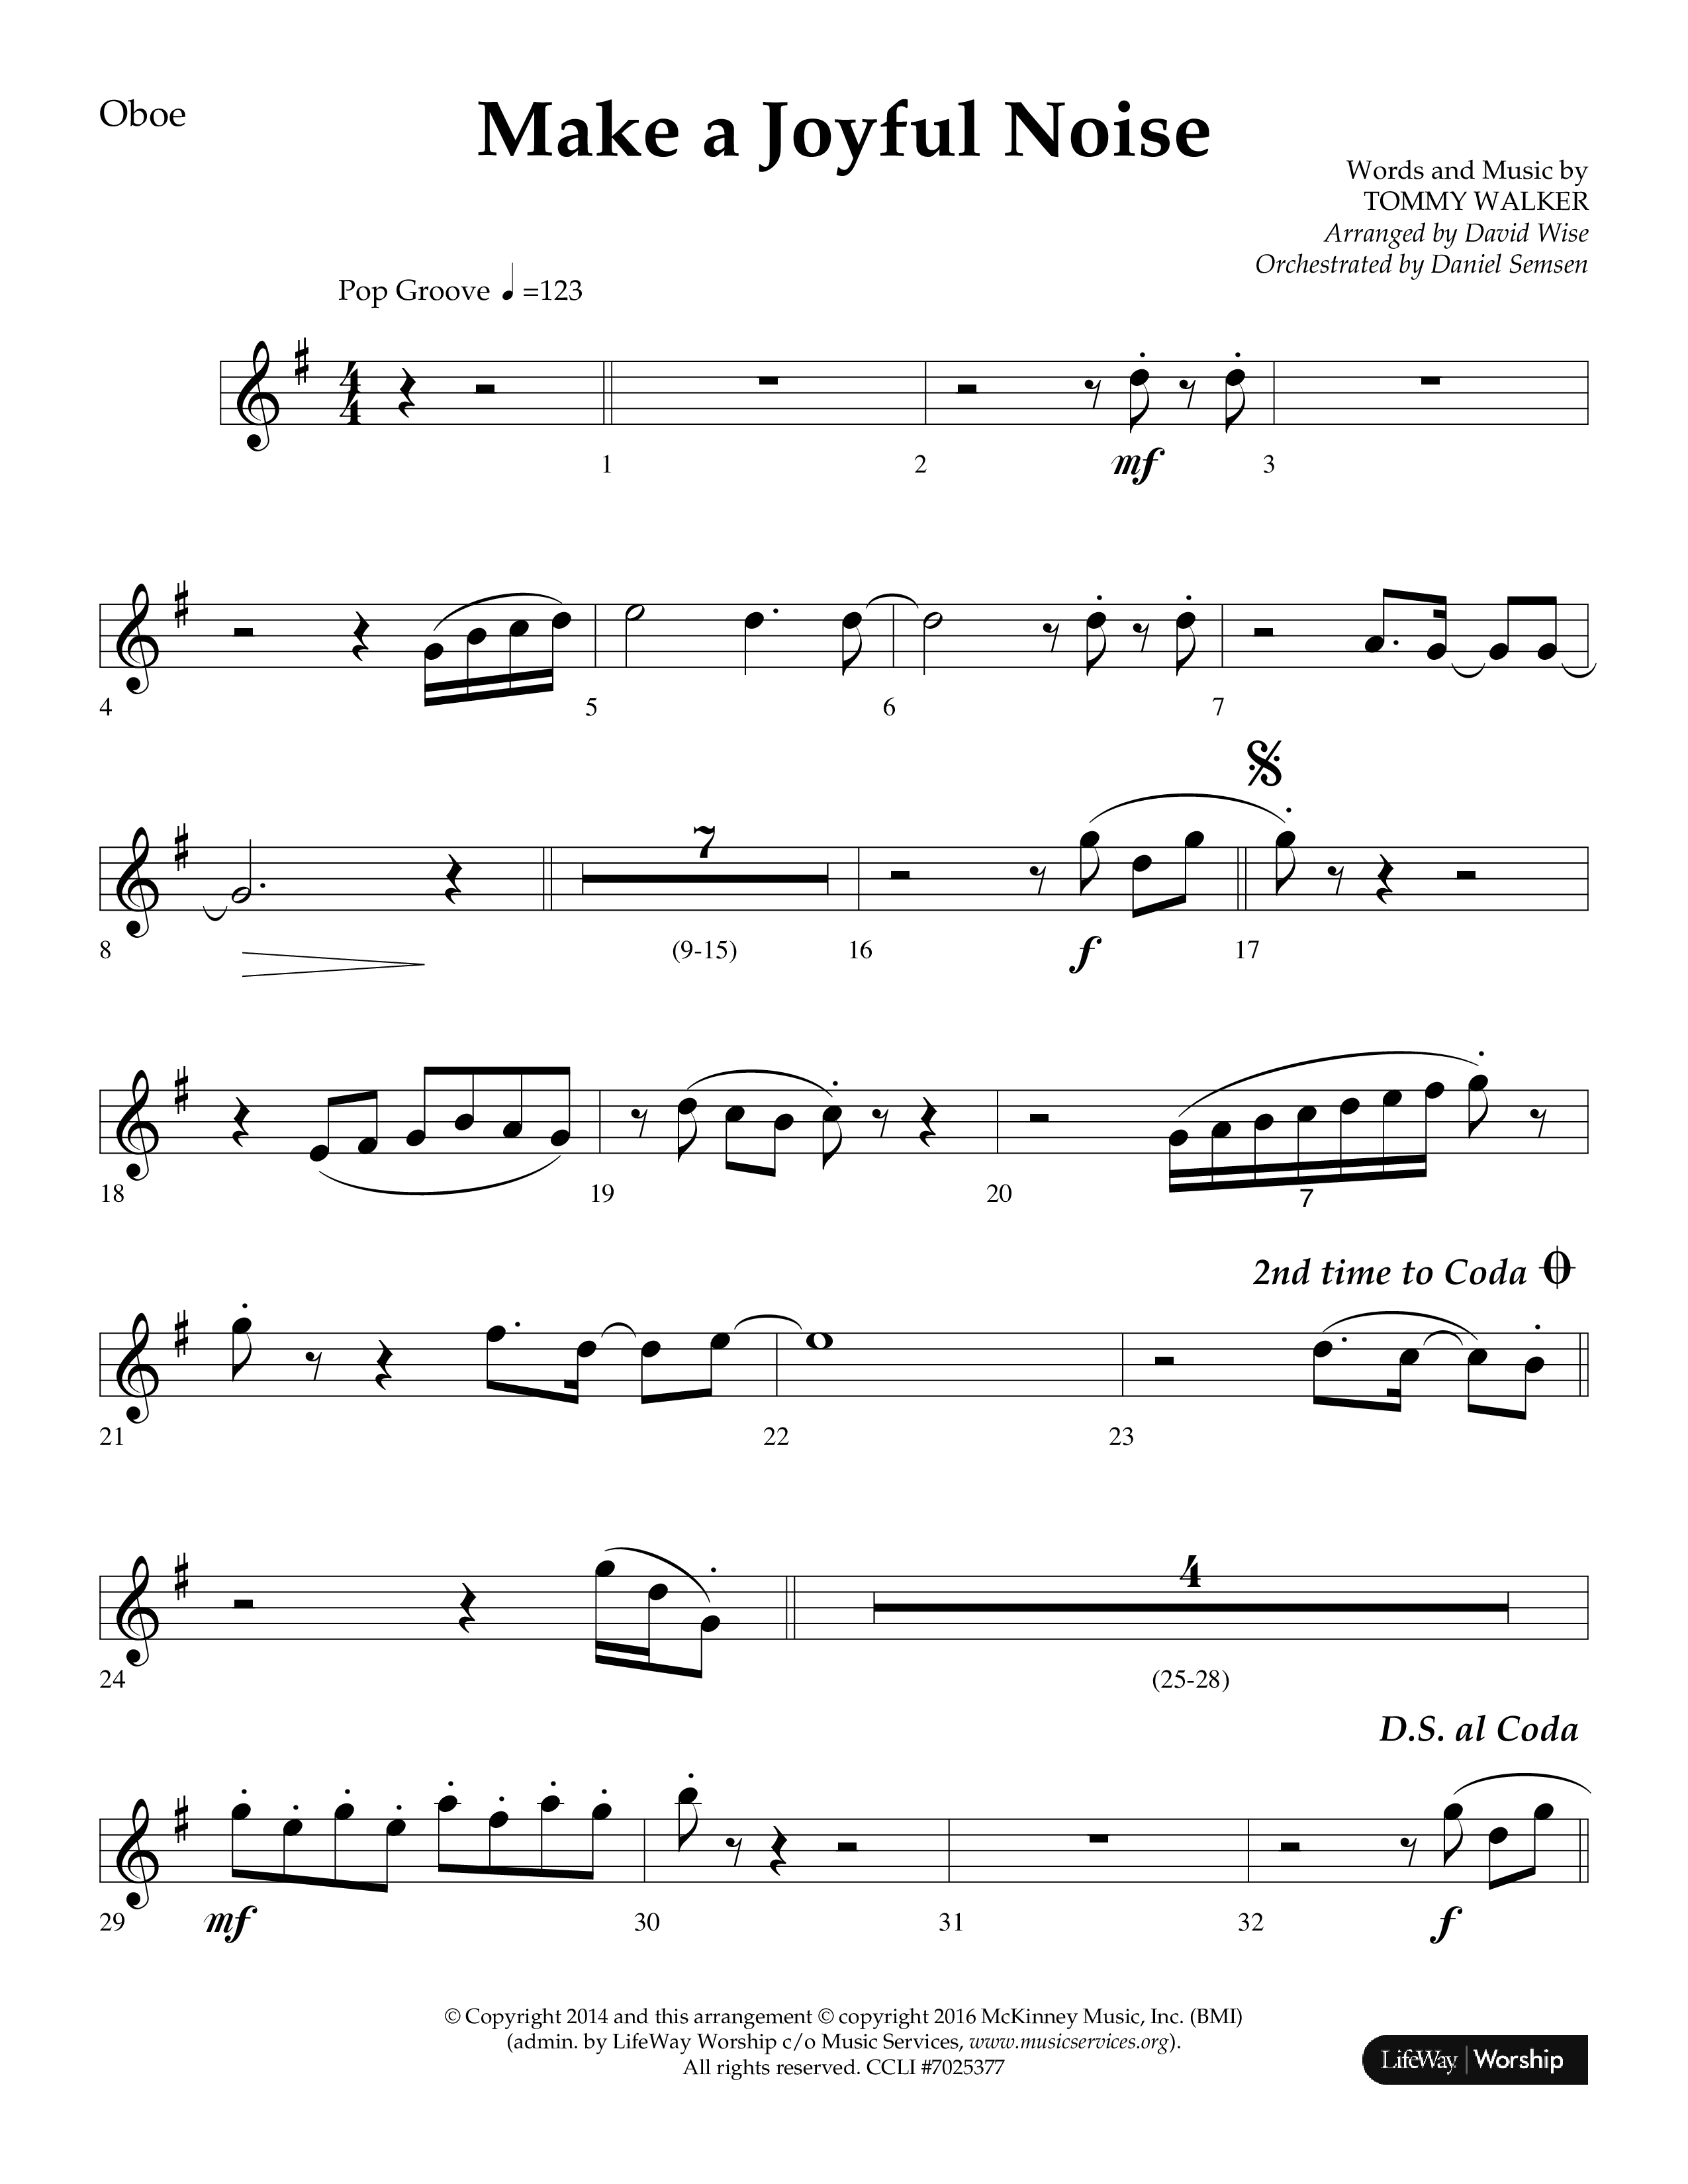 Make A Joyful Noise (Choral Anthem SATB) Oboe (Lifeway Choral / Arr. David Wise / Orch. Daniel Semsen)